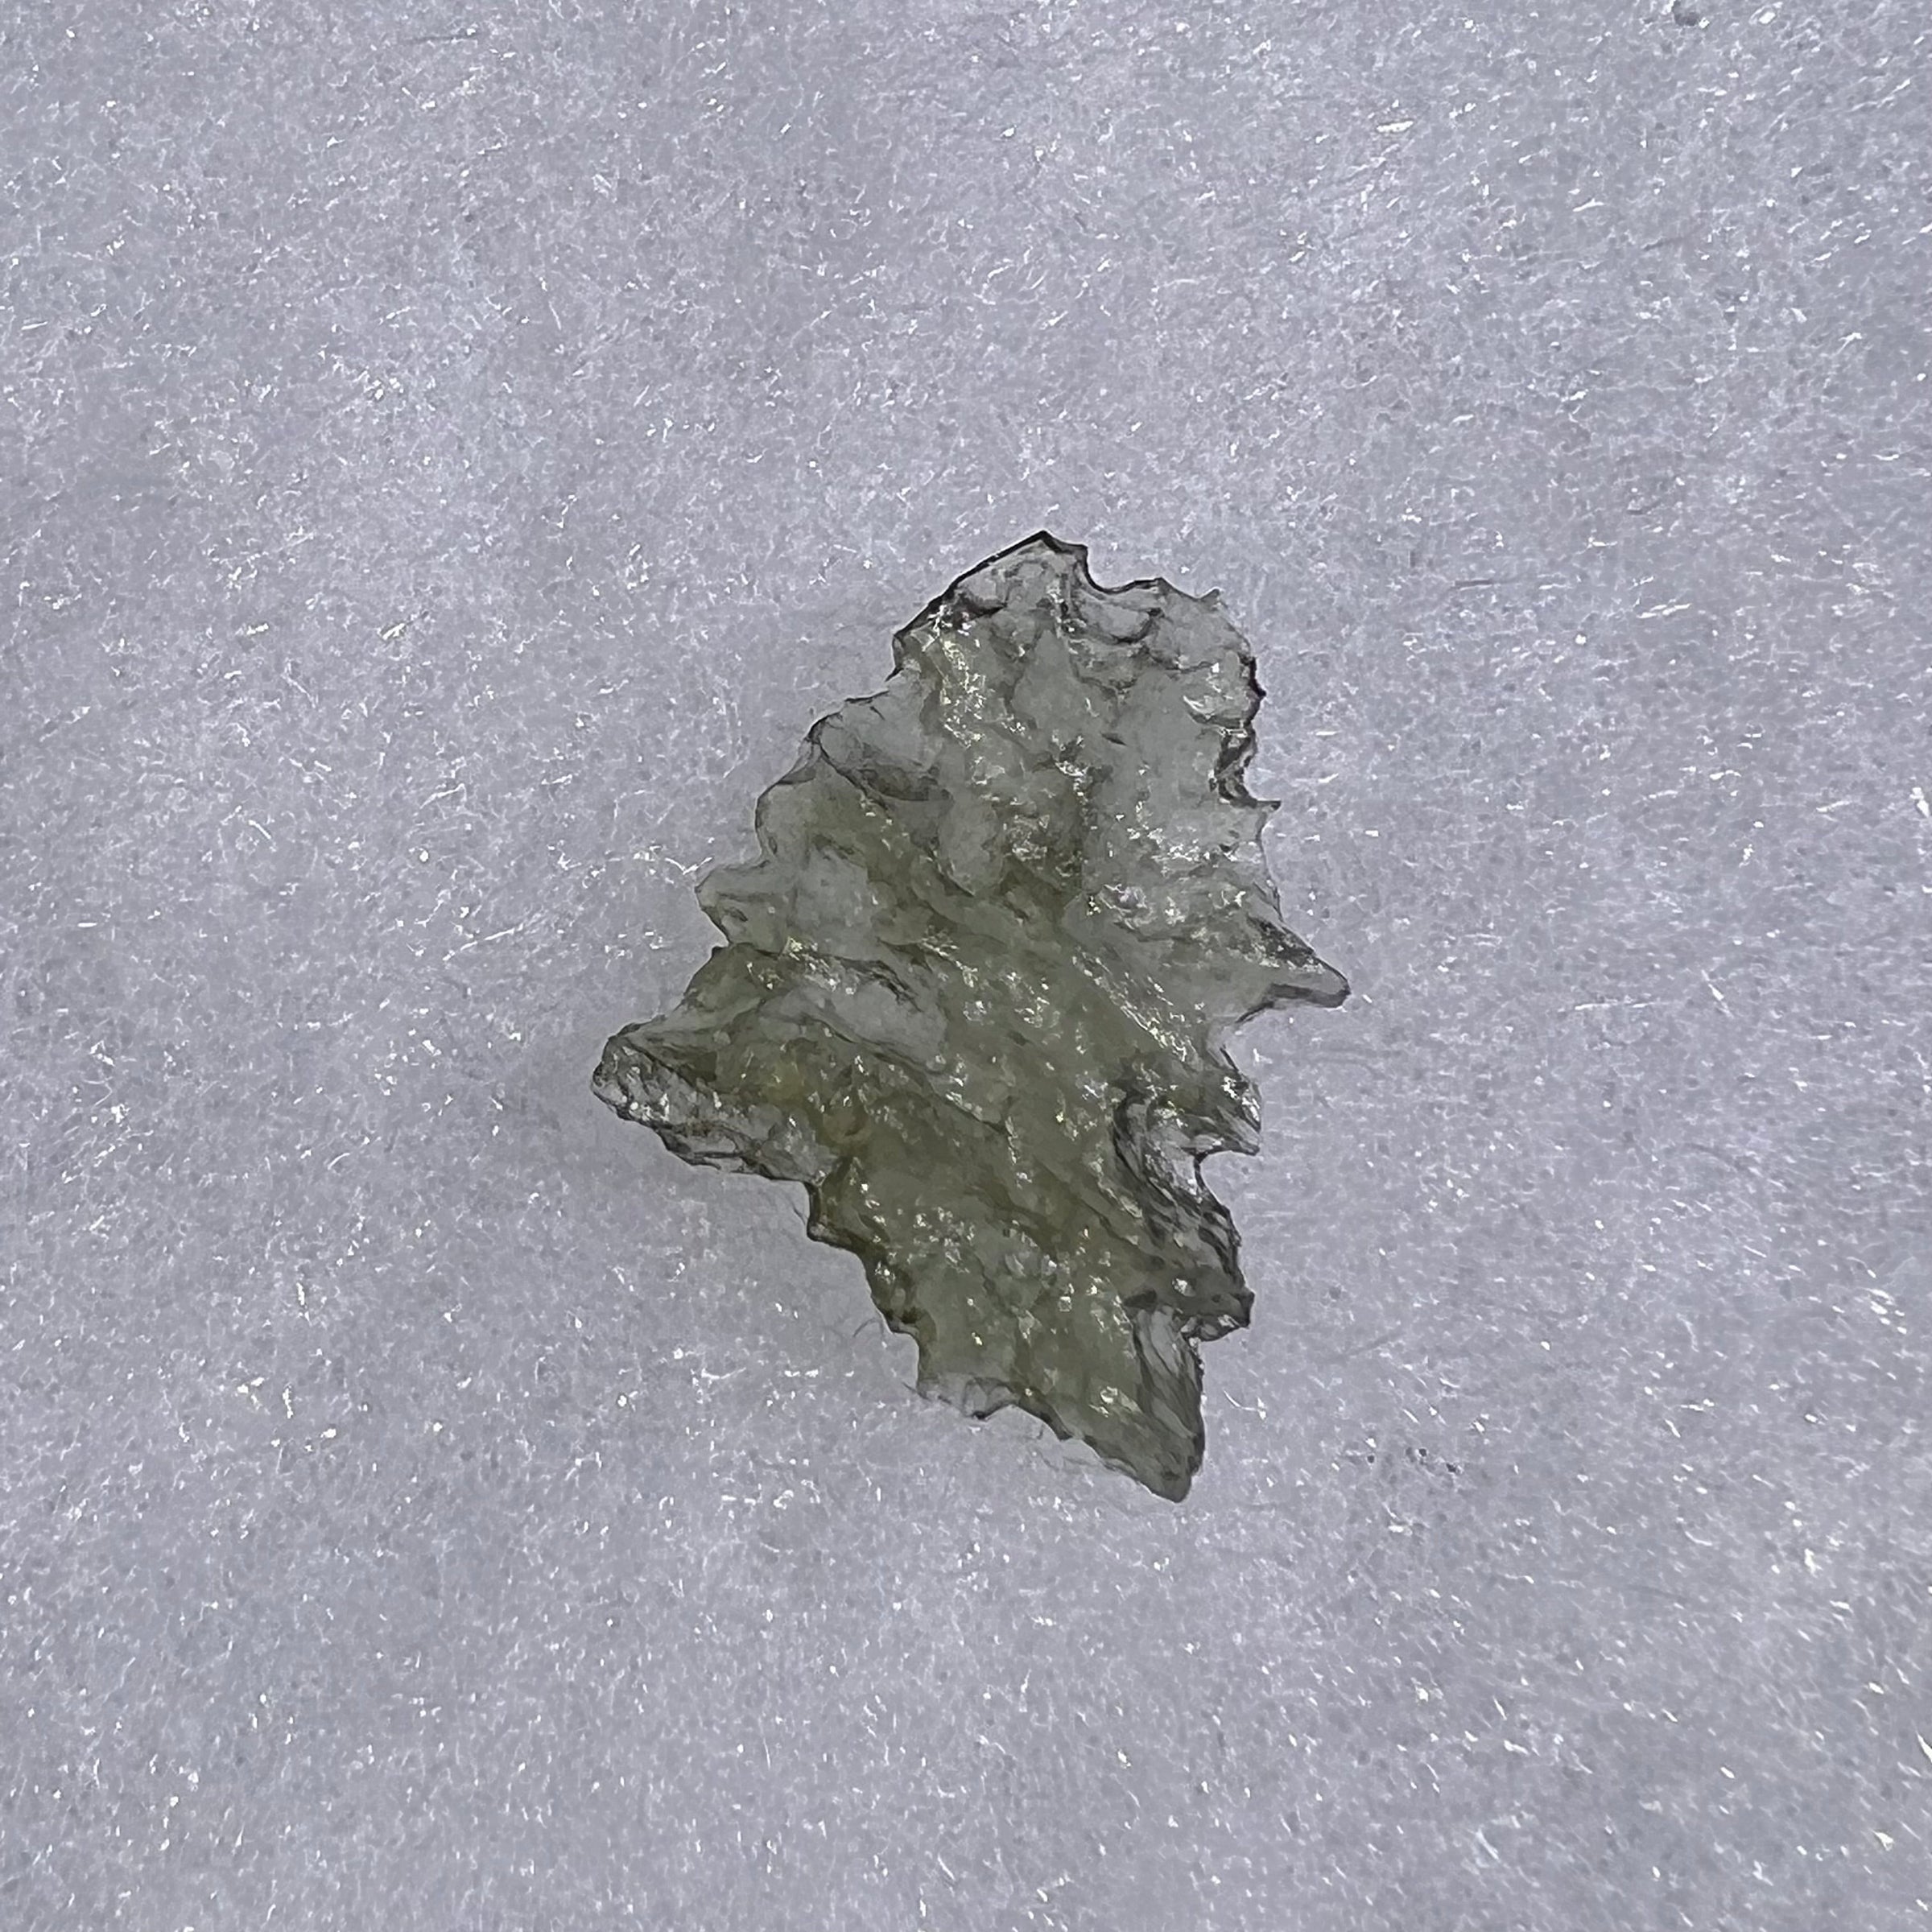 Besednice Moldavite 0.59 grams #495-Moldavite Life